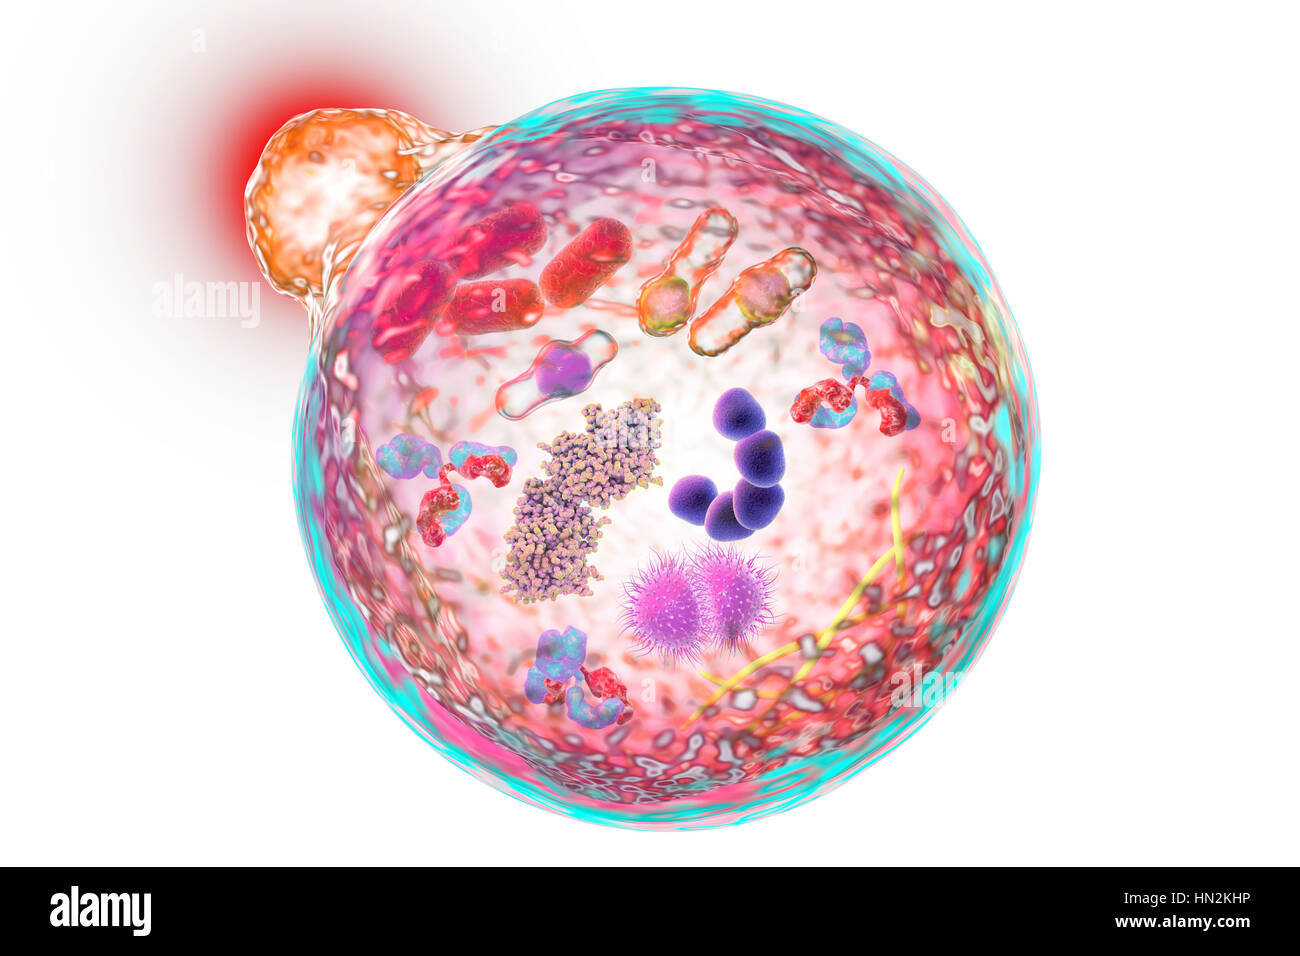 La autofagia. Ilustración de un equipo lysosome (naranja) con una fusión  autophagosome (gran esfera). La autofagia (autophagocytosis) es el  mecanismo natural que destruye innecesaria o componentes celulares  disfuncionales y recicla sus materiales.